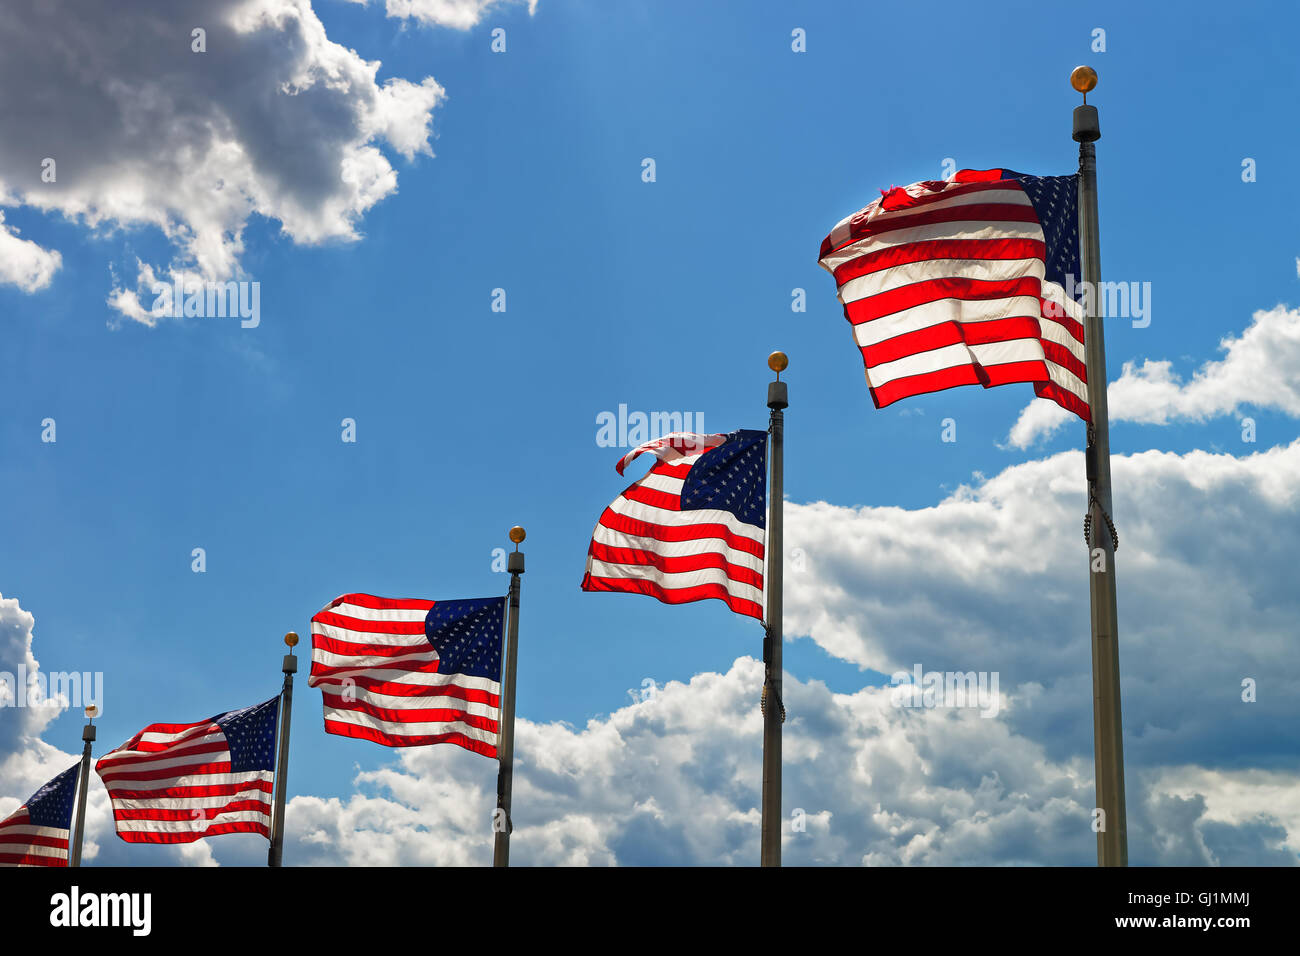 Flaggen der Vereinigten Staaten mit einem wunderschönen Himmel im Hintergrund in Washington D.C., USA. Jede besteht aus 13 Streifen und 50 Sterne für jedes uns staatliche. Aktuelle Version wurde im Jahr 1960 verabschiedet. Stockfoto